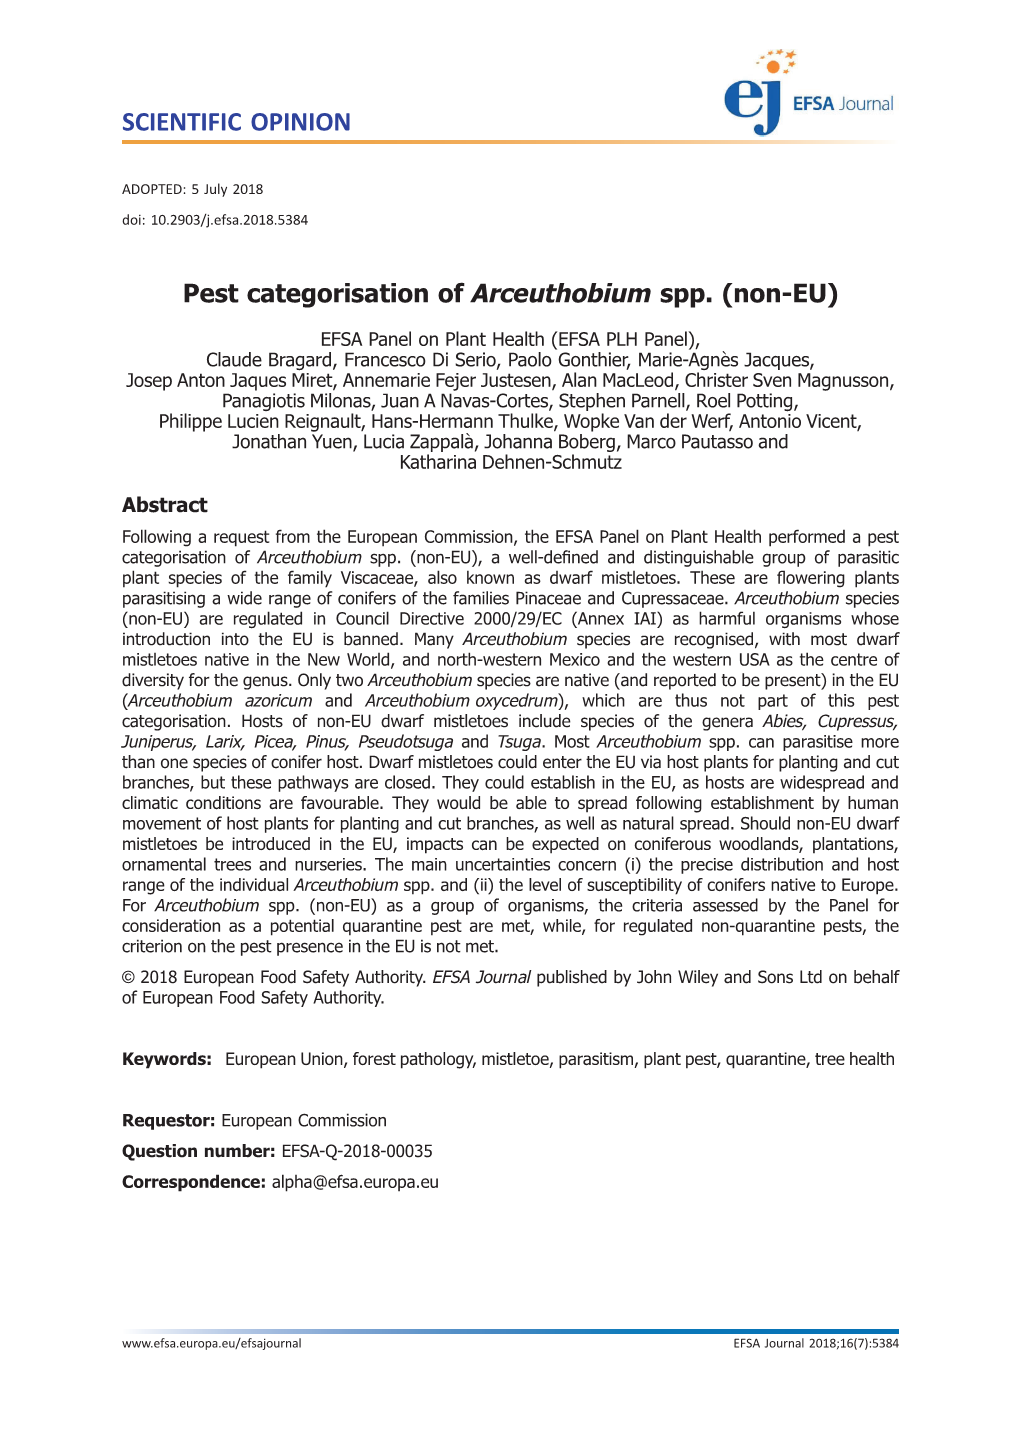 Pest Categorisation of Arceuthobium Spp. (Non-EU)